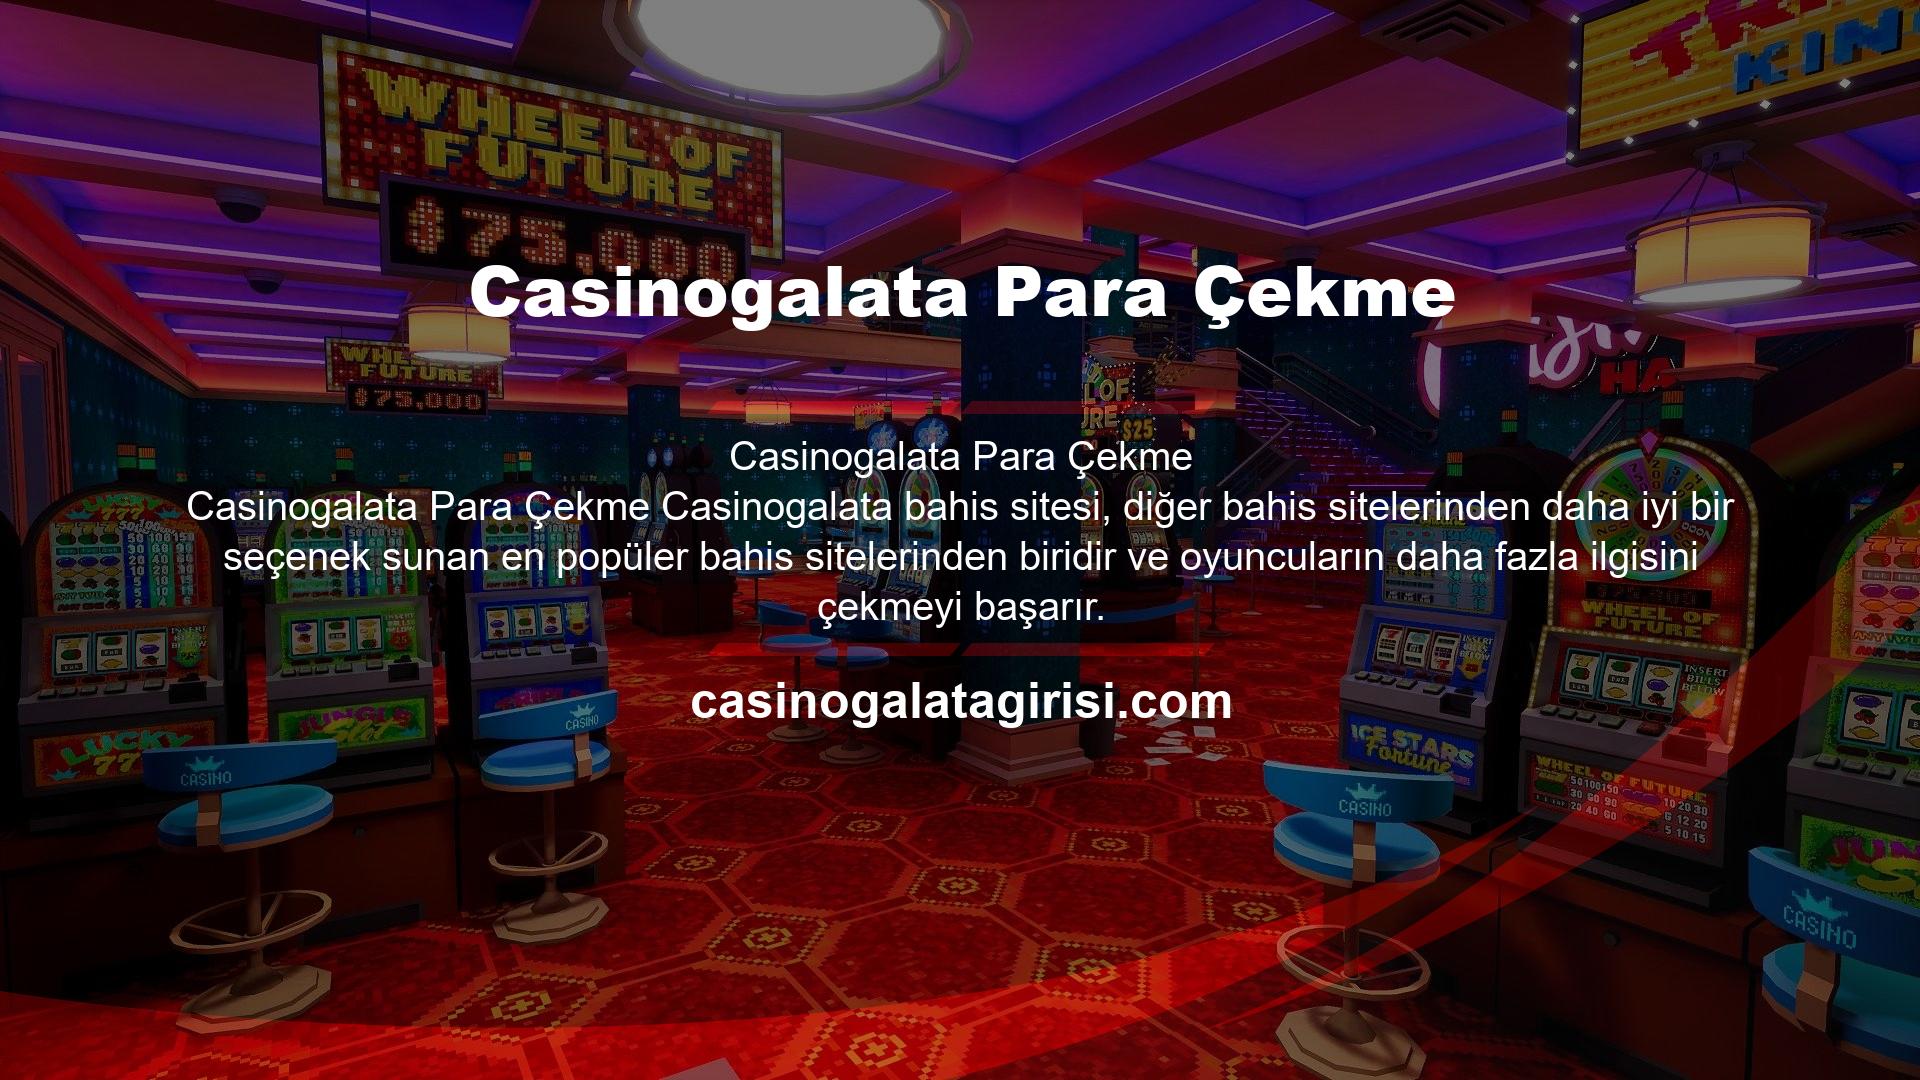 Bahis ve Canlı Casino sitesi, lisans verilene kadar üyelerinin kimlik bilgilerinin gizliliğini garanti eder